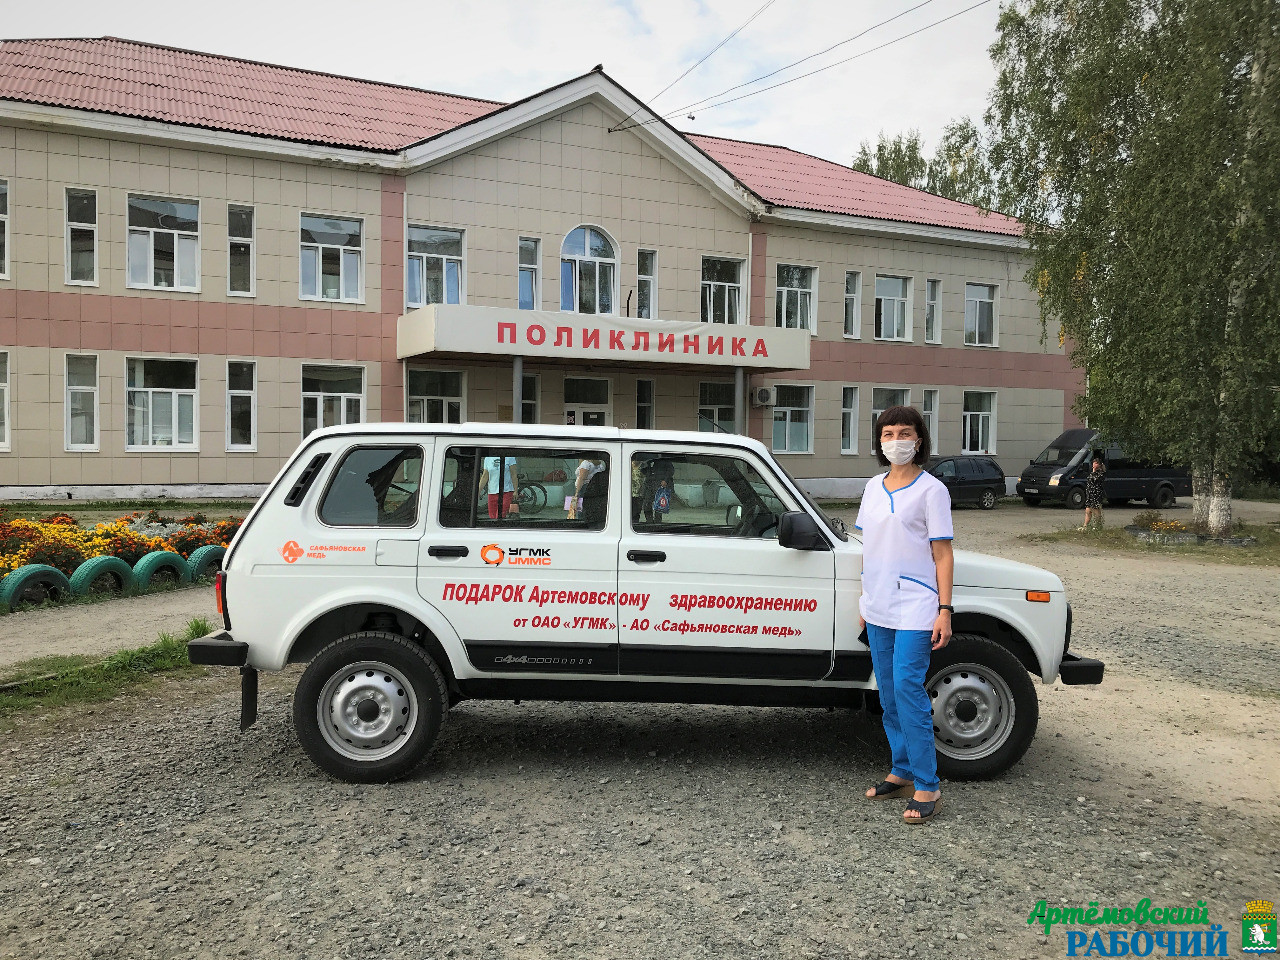 УГМК подарила больнице автомобиль в благодарность за лечение пациентов с COVID-19